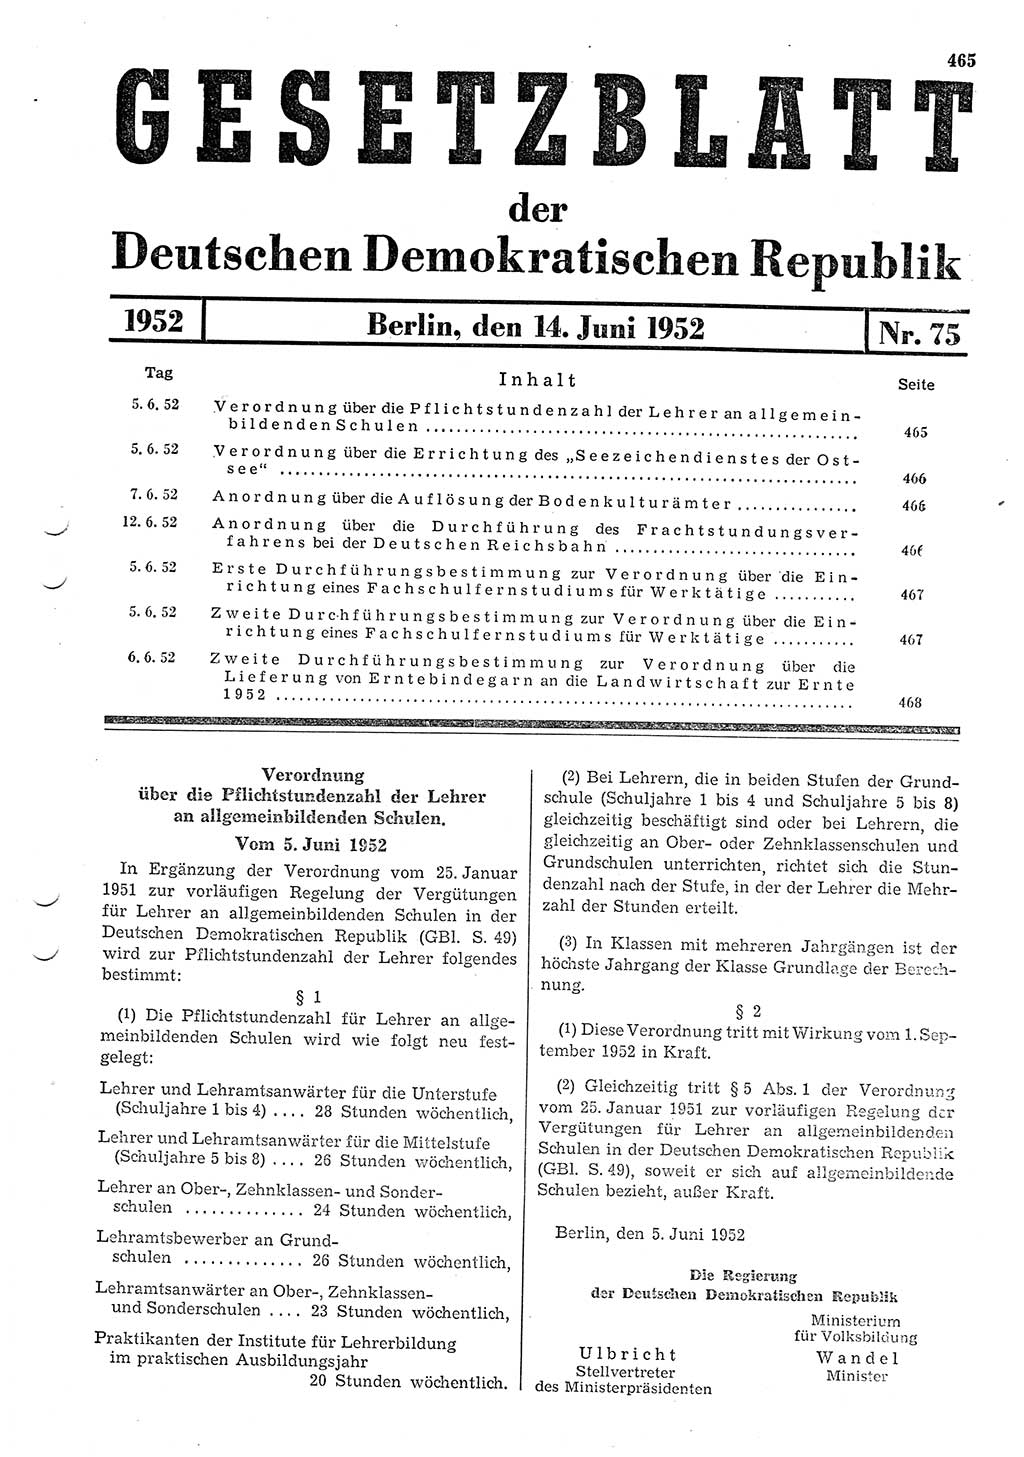 Gesetzblatt (GBl.) der Deutschen Demokratischen Republik (DDR) 1952, Seite 465 (GBl. DDR 1952, S. 465)